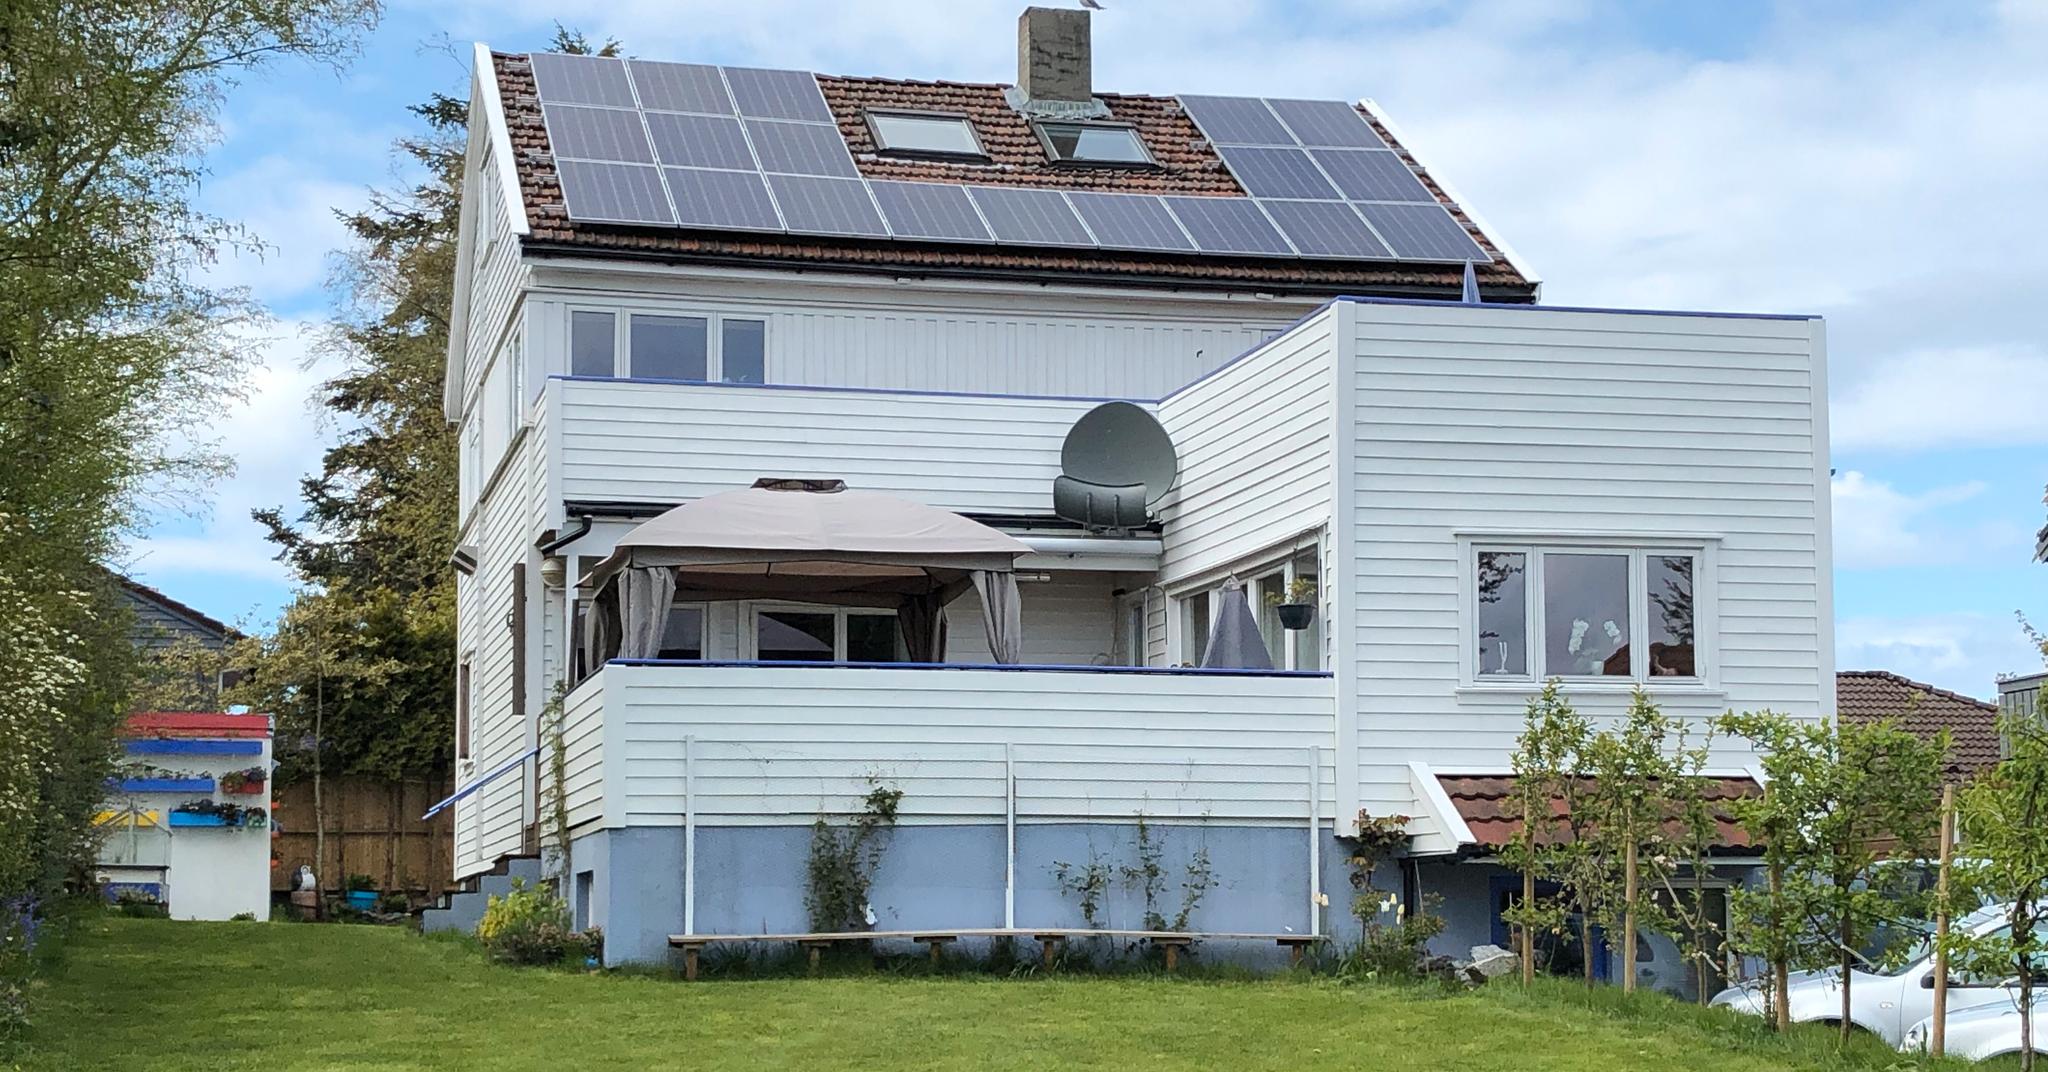 Slik ser huset ut med solcellepanel.